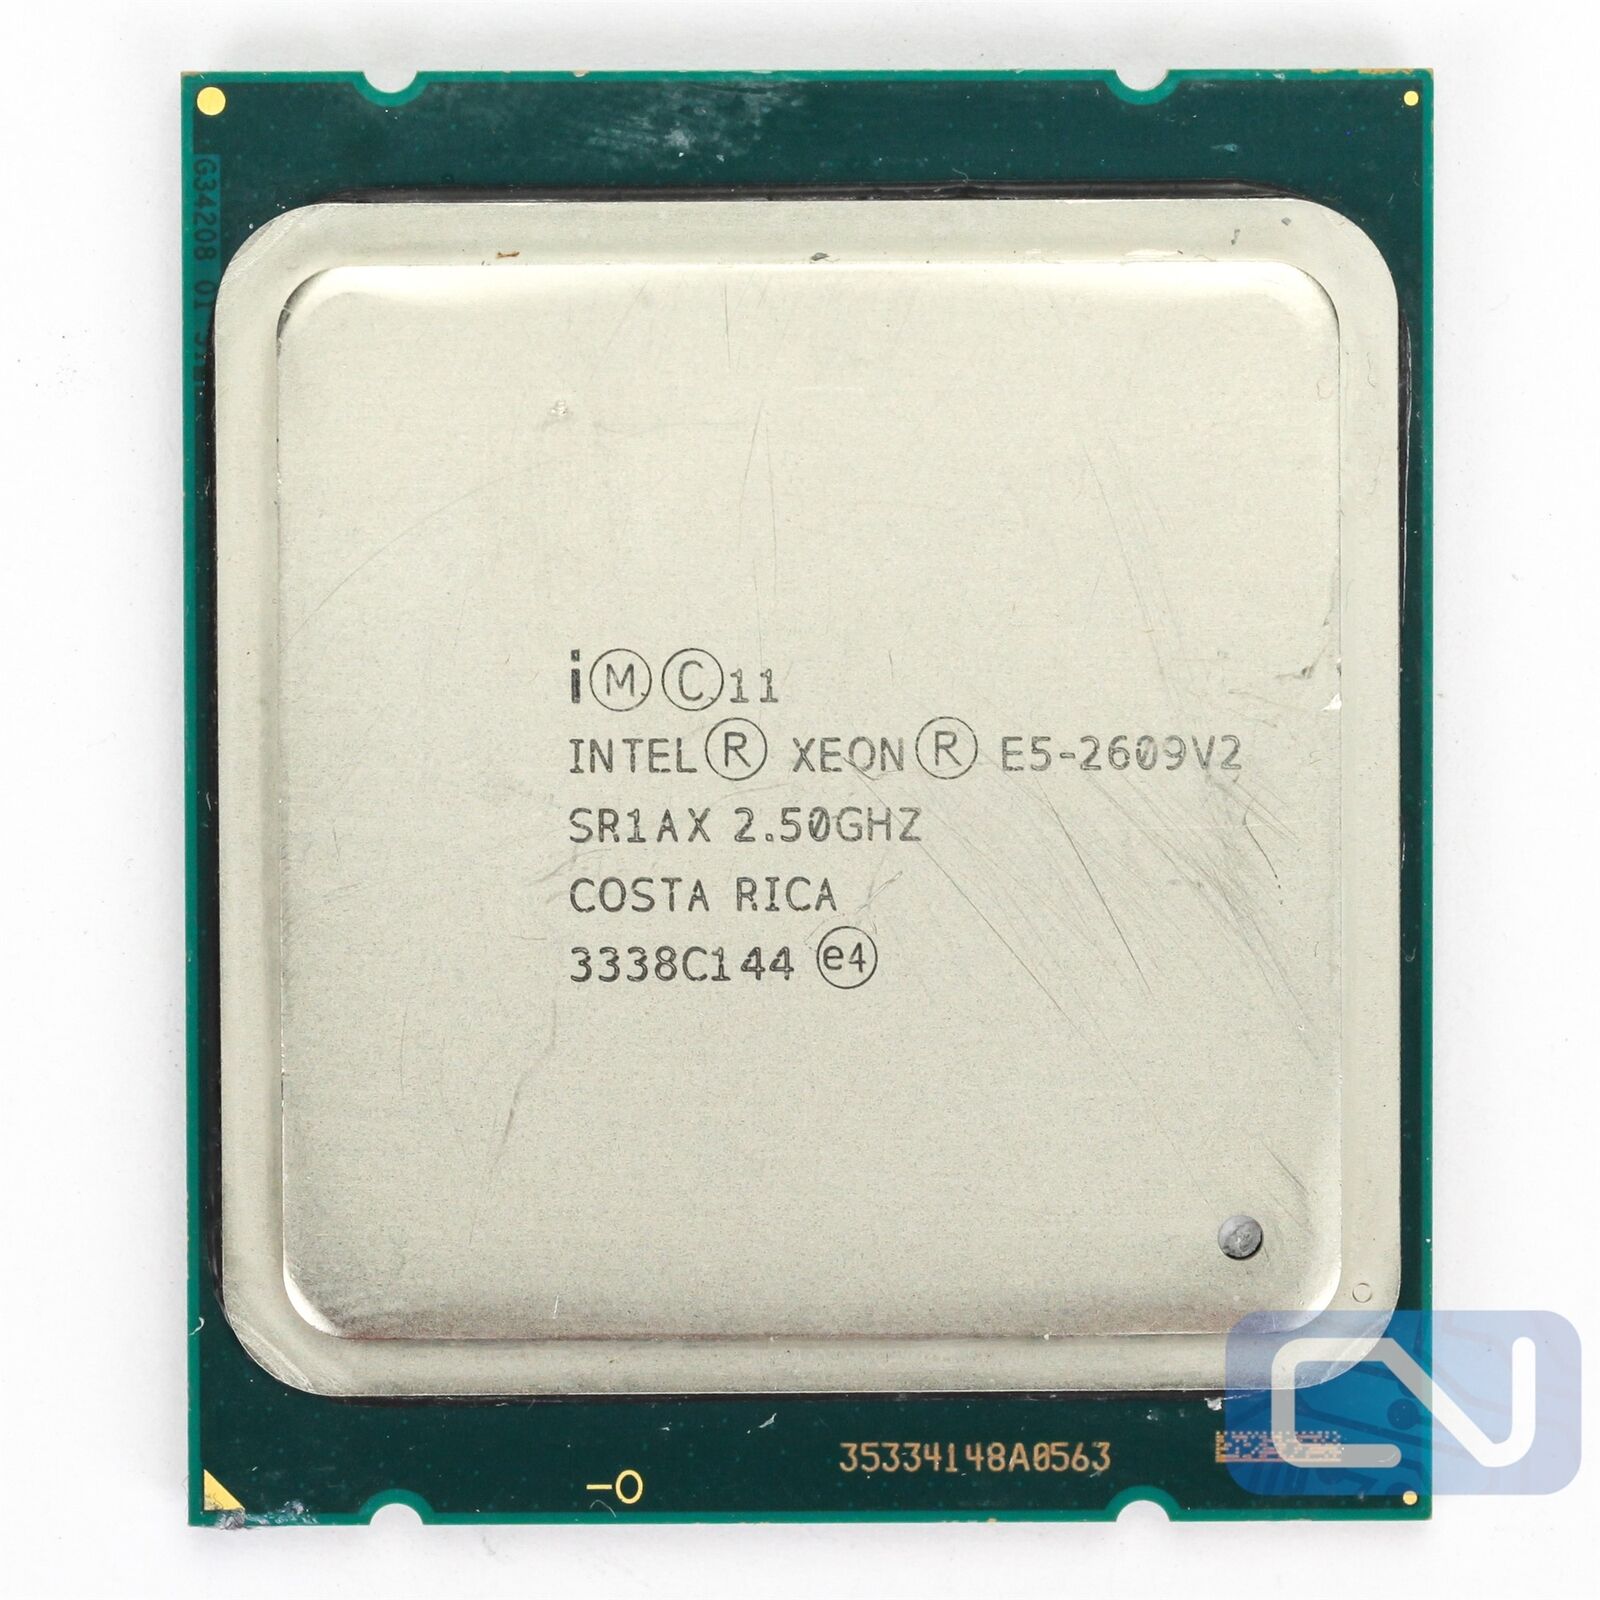 Intel Xeon E5-2609 v2 2.5GHz 10MB 6.4GT/s SR1AX B Grade CPU Processor